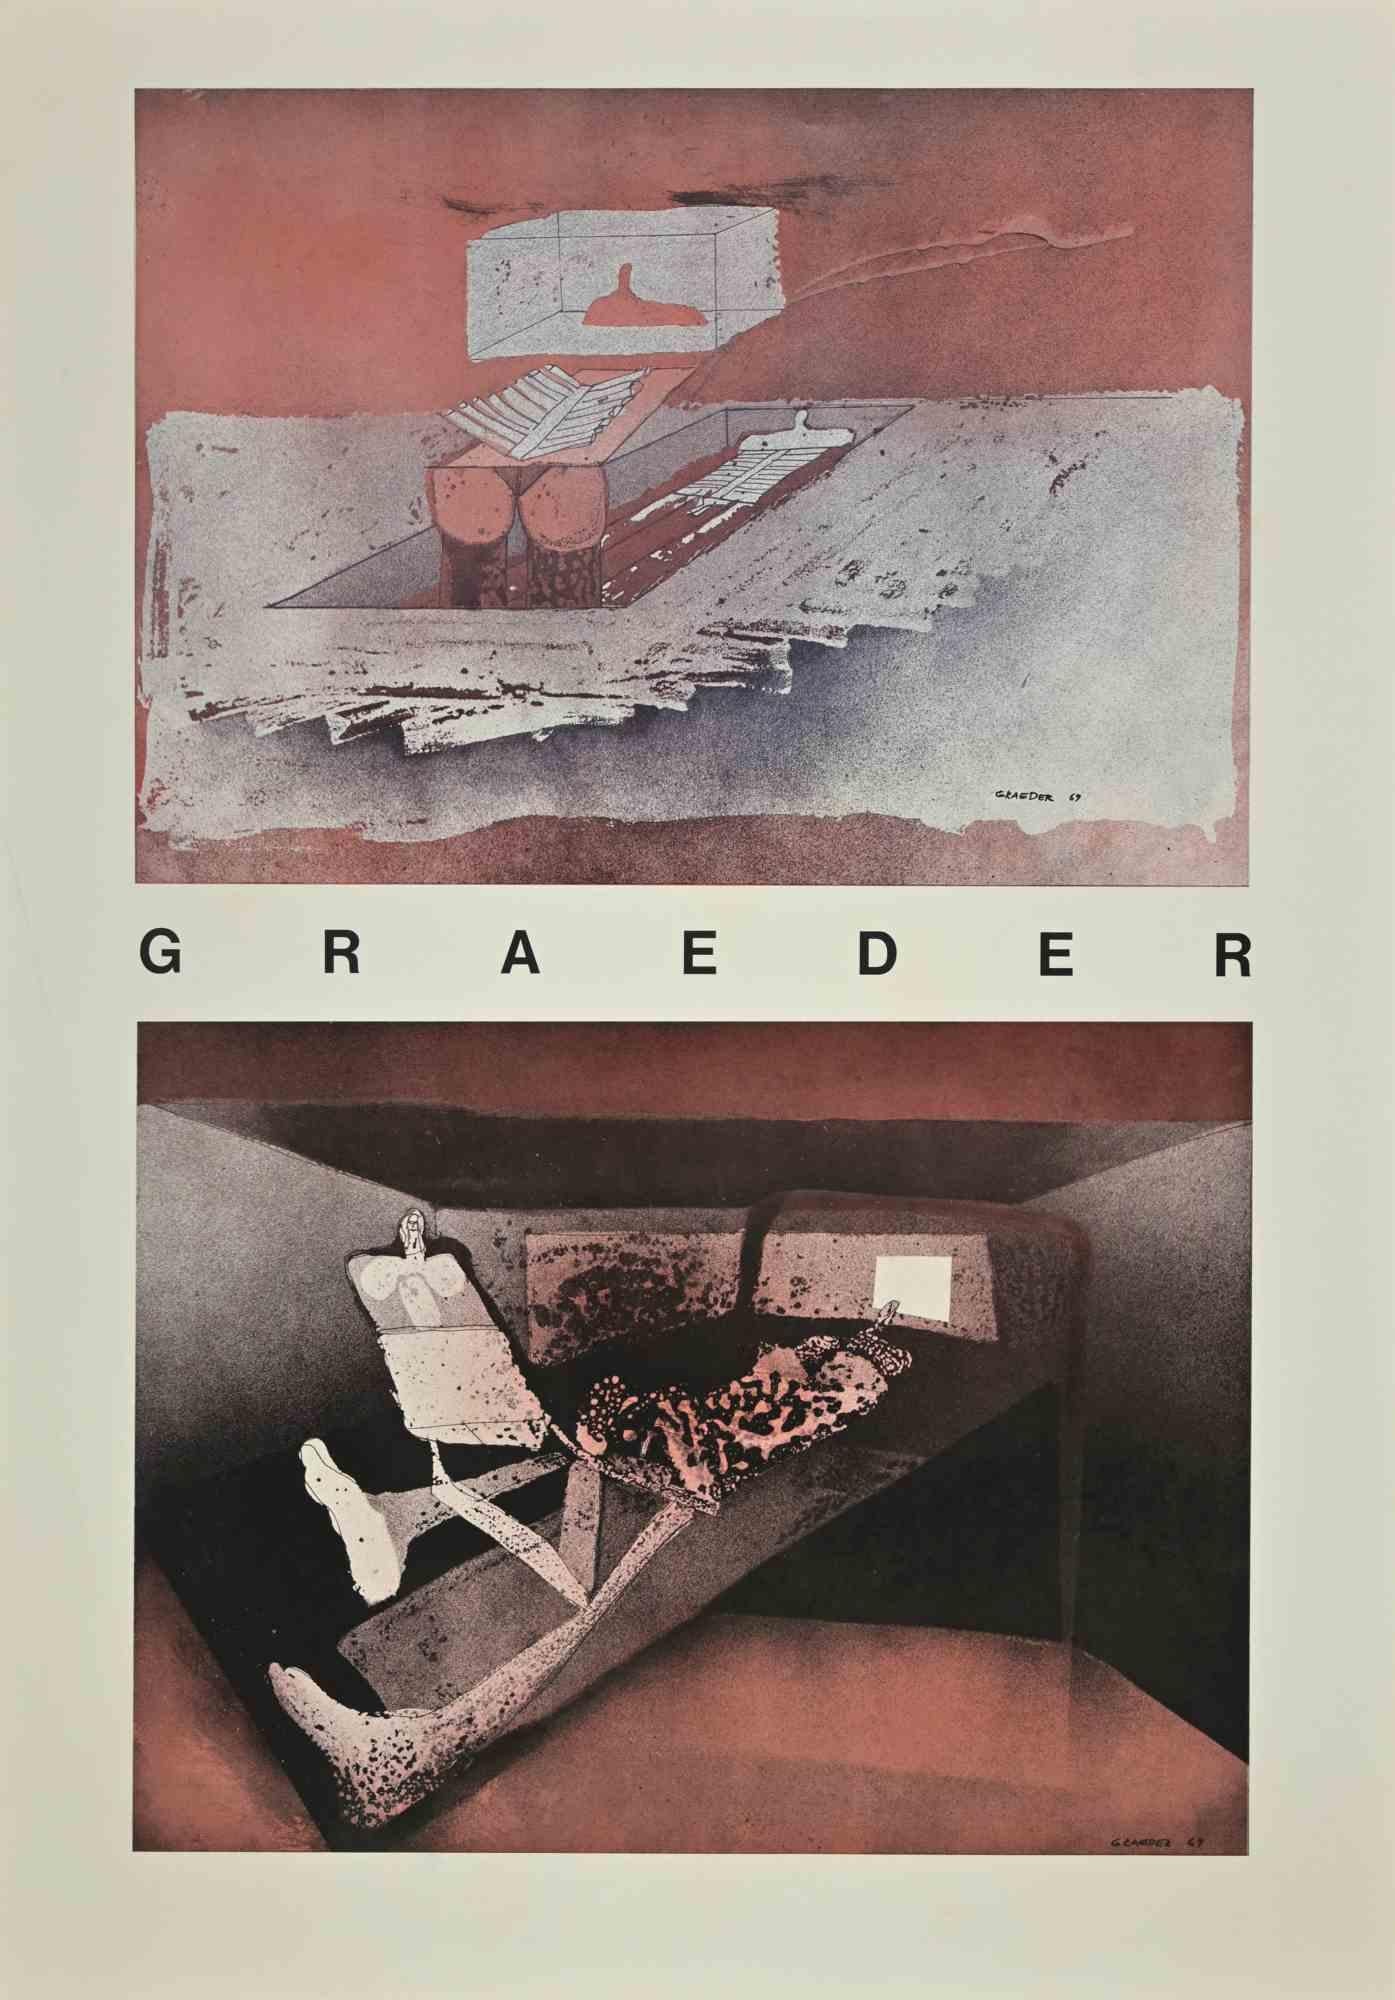 Untitled ist ein Kunstwerk, das Hans Graeder (Mannheim, 1919 - Mannheim, 1998) 1969 realisiert hat.

Lithographie, signiert und datiert auf der Platte.

Guter Zustand.

Hans Graeder (Mannheim, 1919 - Mannheim, 1998) war ein Maler, Grafiker und